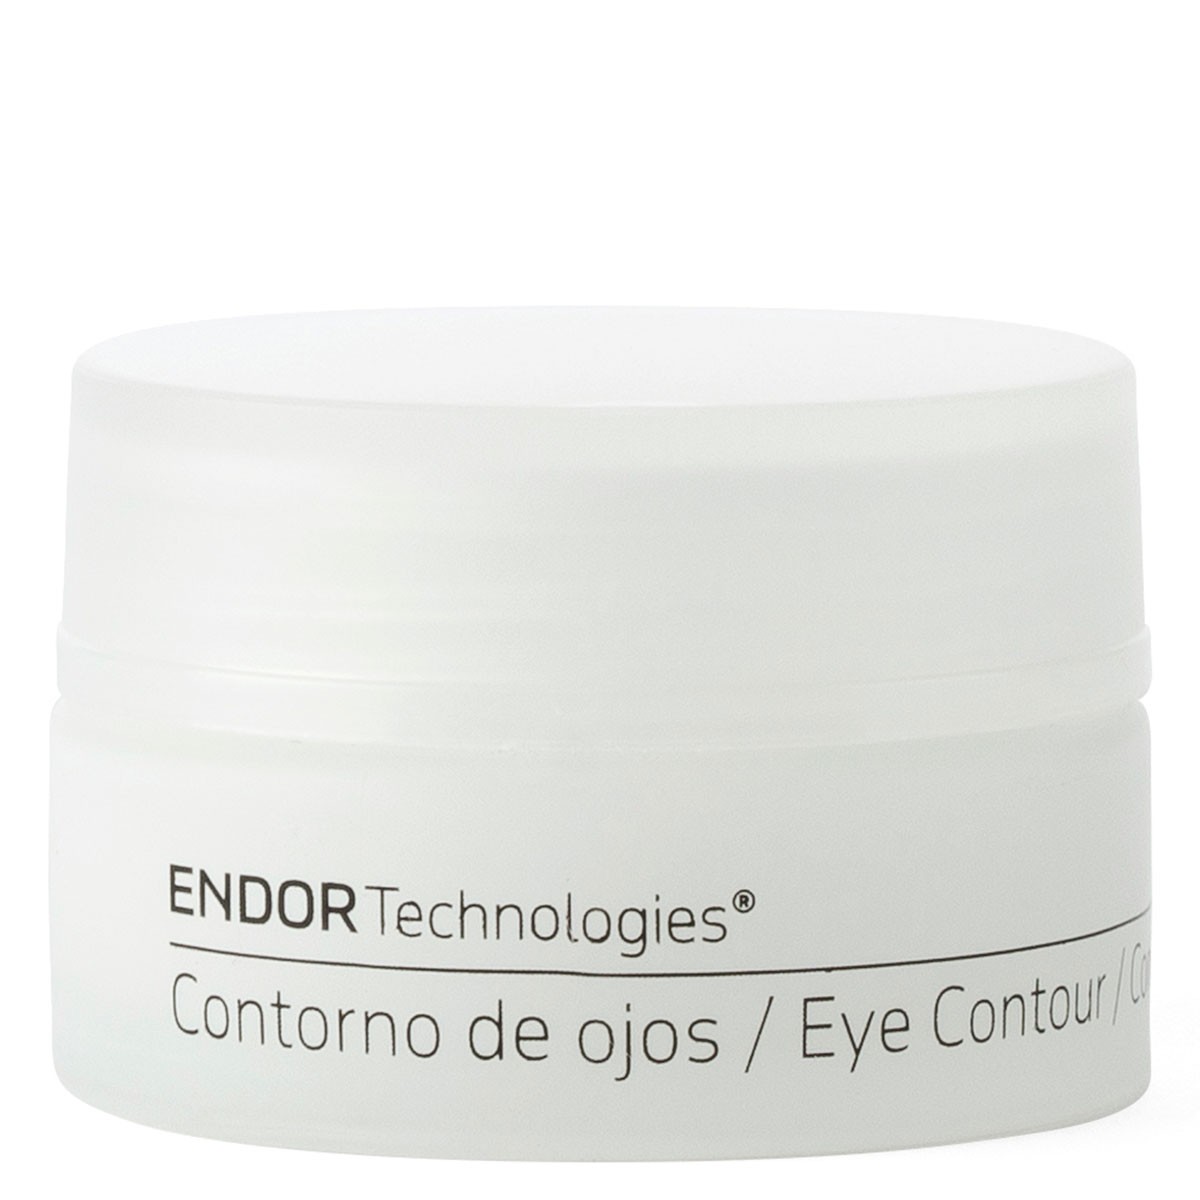 Endor Eye Contour - Contorno de ojos